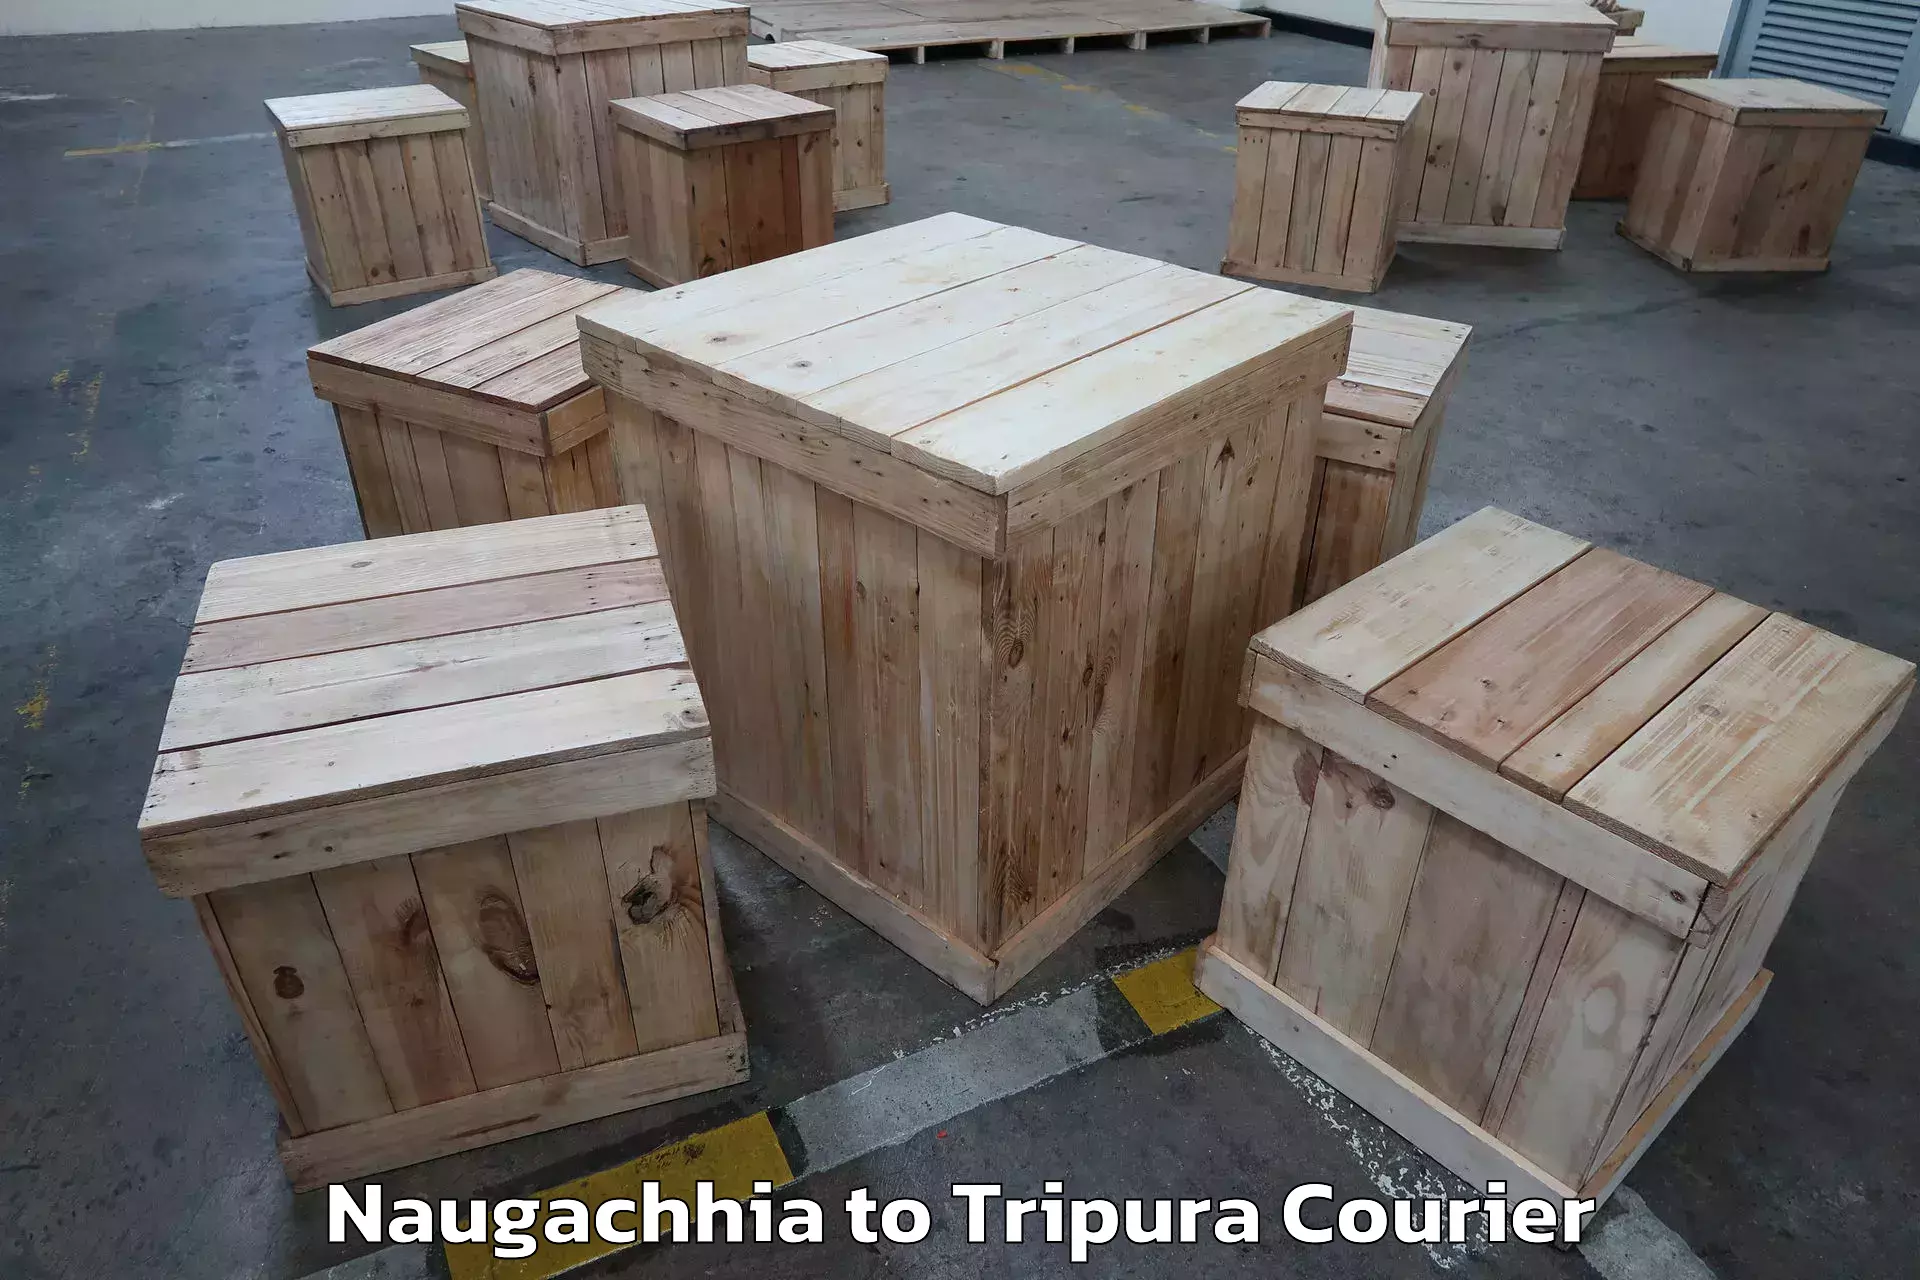 Furniture moving experts Naugachhia to Aambasa